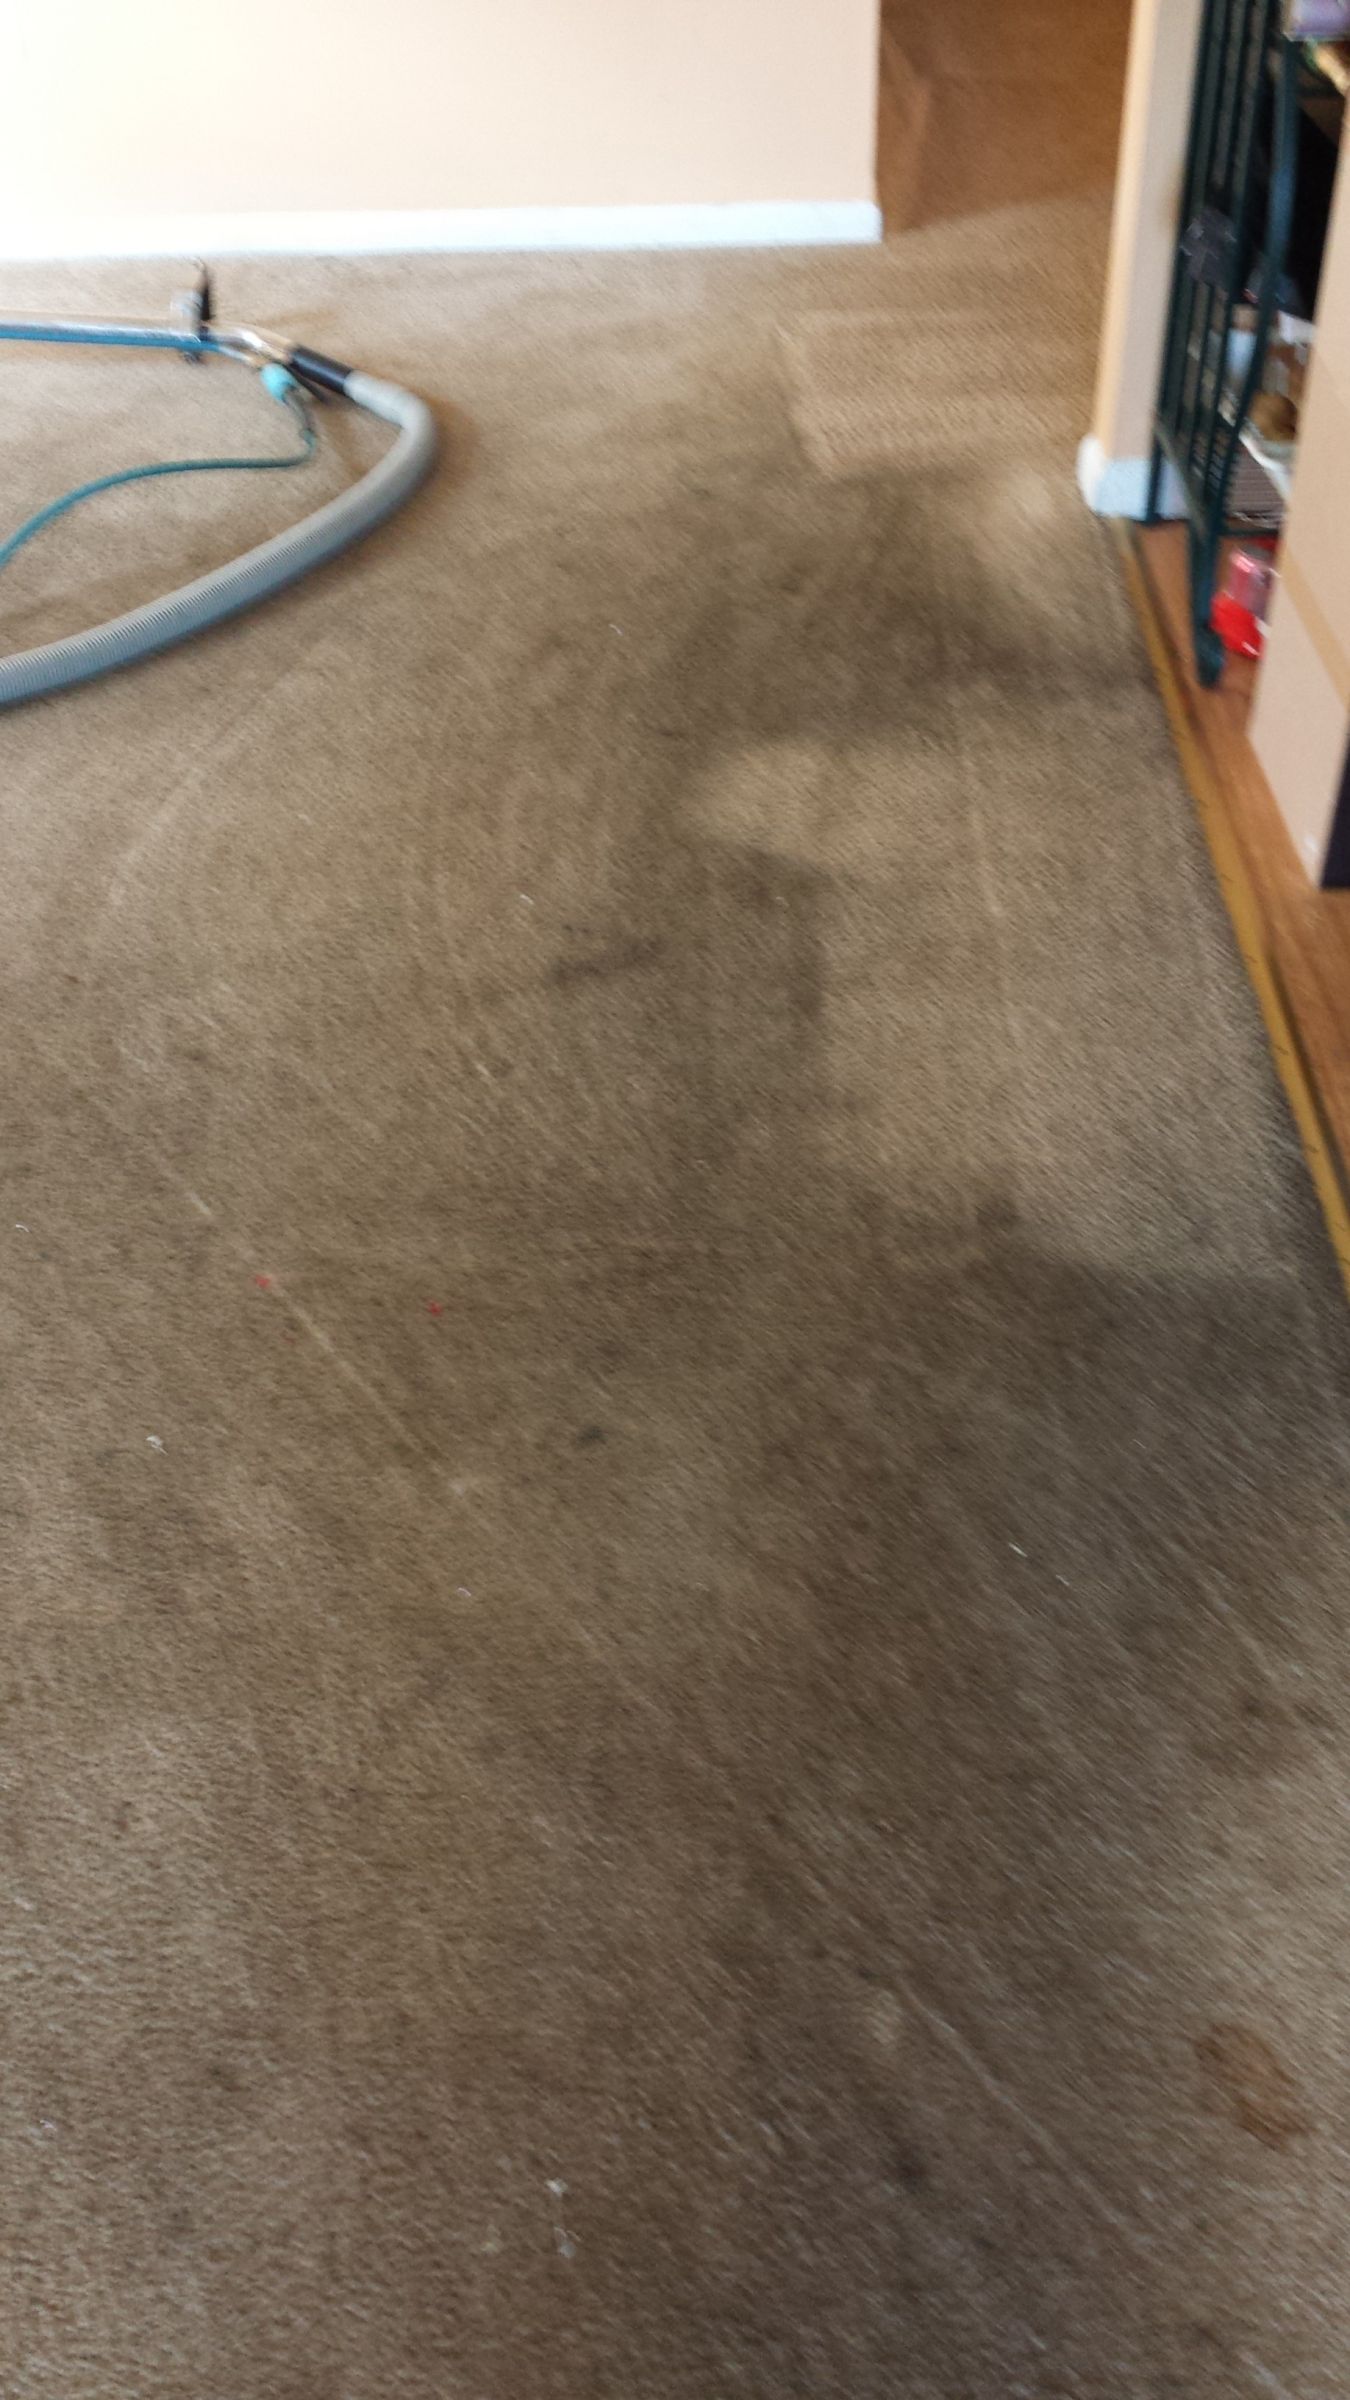 Mullica Hill Carpet Cleaner. Stains, Smells & Pet Dander